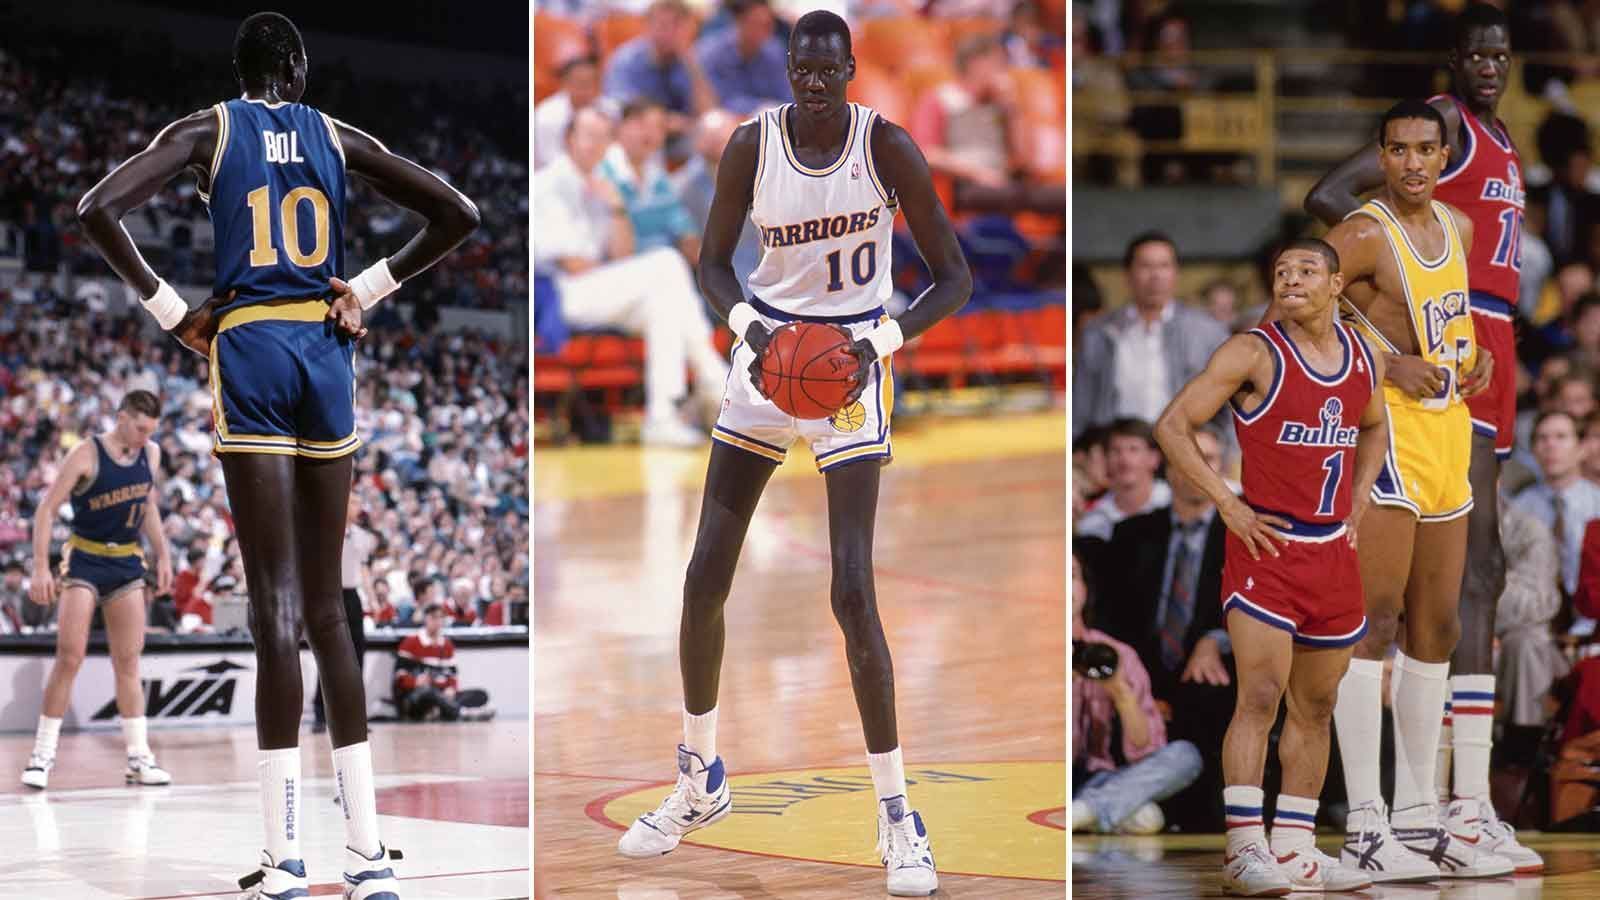 
                <strong>Platz 1 (geteilt): Manute Bol</strong><br>
                &#x2022; Größe: 2,31 Meter (US-Größe: 7 foot 7 inches)<br>&#x2022; Teams: Washington Bullets (1985-1988, 1994), Golden State Warriors (1988-1990, 1994), Philadelphia 76ers (1990-1993, 1994), Miami Heat (1993-1994)<br>&#x2022; Nationalitäten: Sudan, USA<br>&#x2022; Stats: 1.599 Punkte und 2.647 Rebounds in 625 Spielen<br>
              